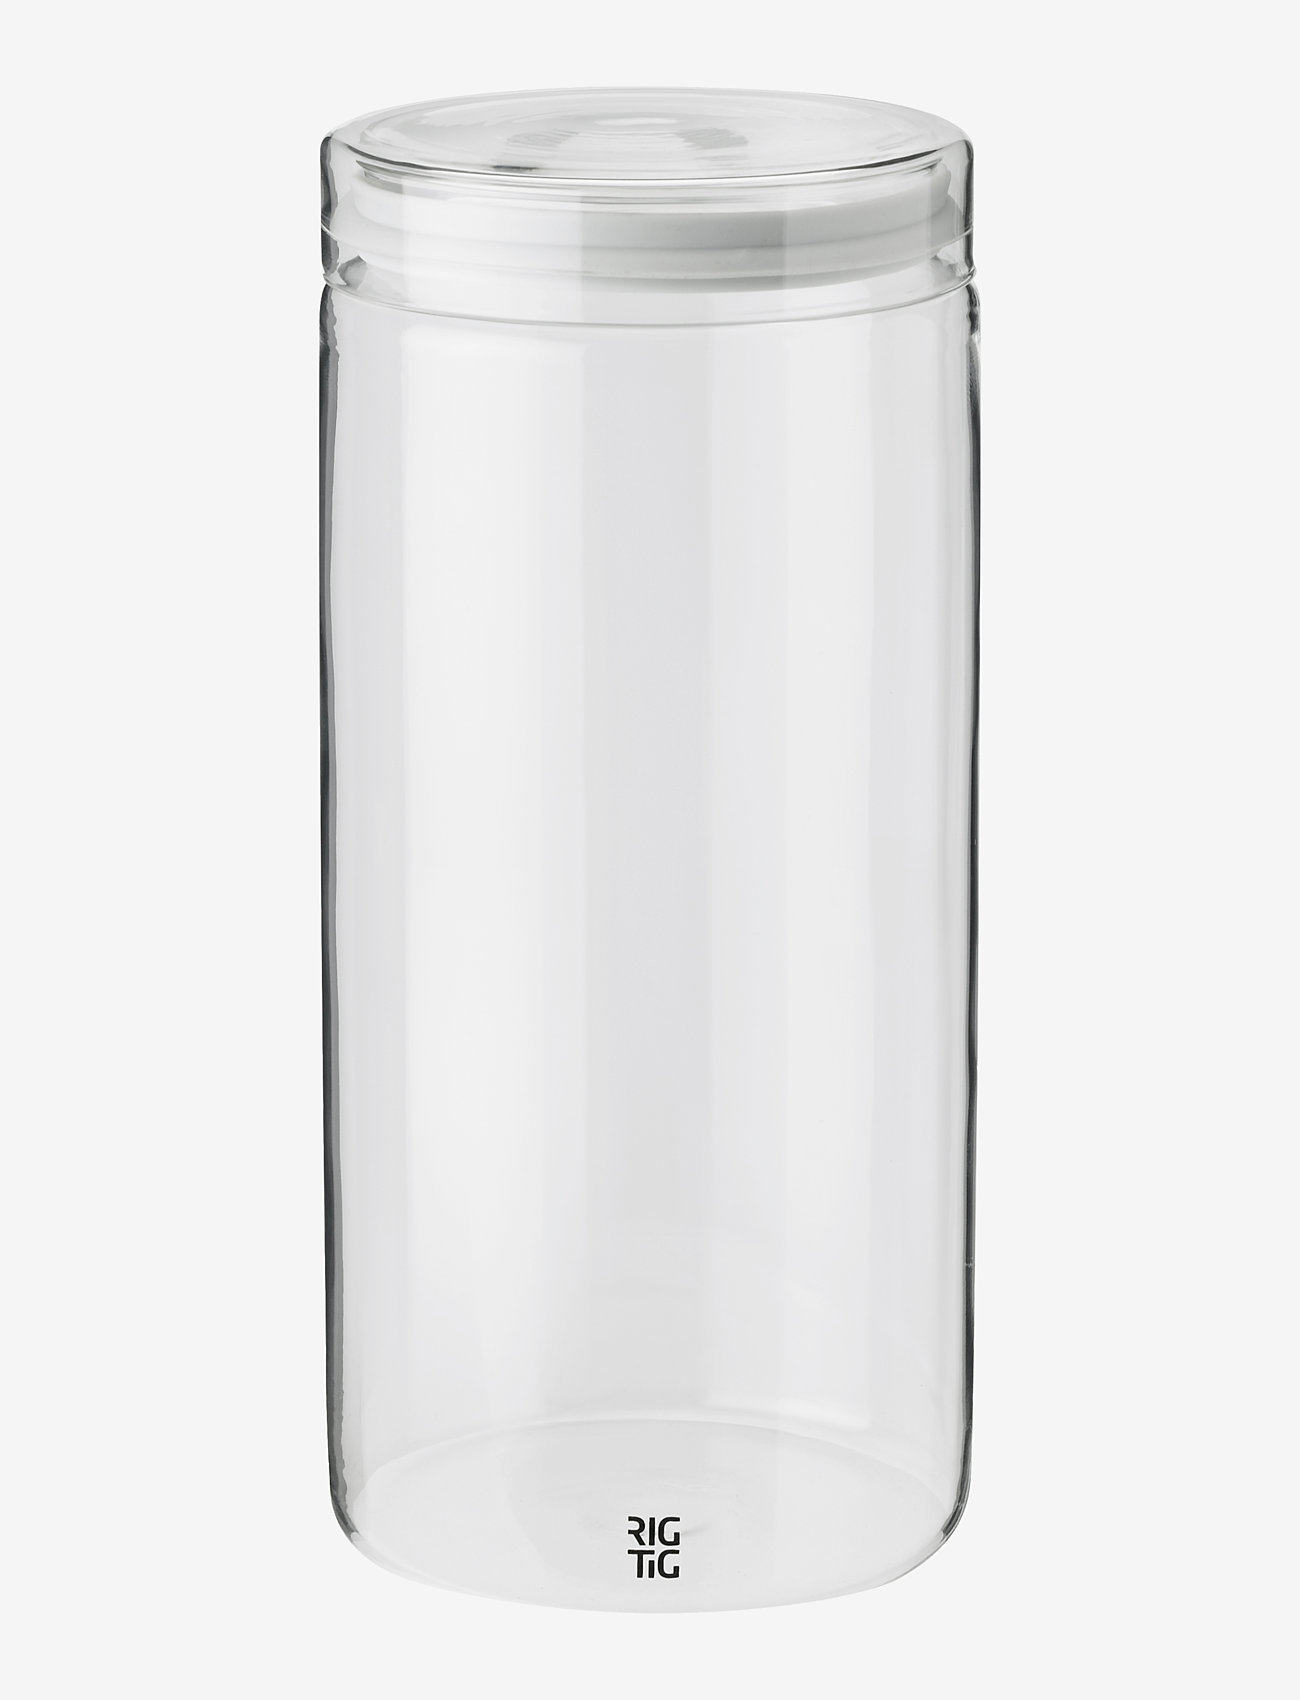 RIG-TIG - Store-It storage jar - die niedrigsten preise - light grey - 0